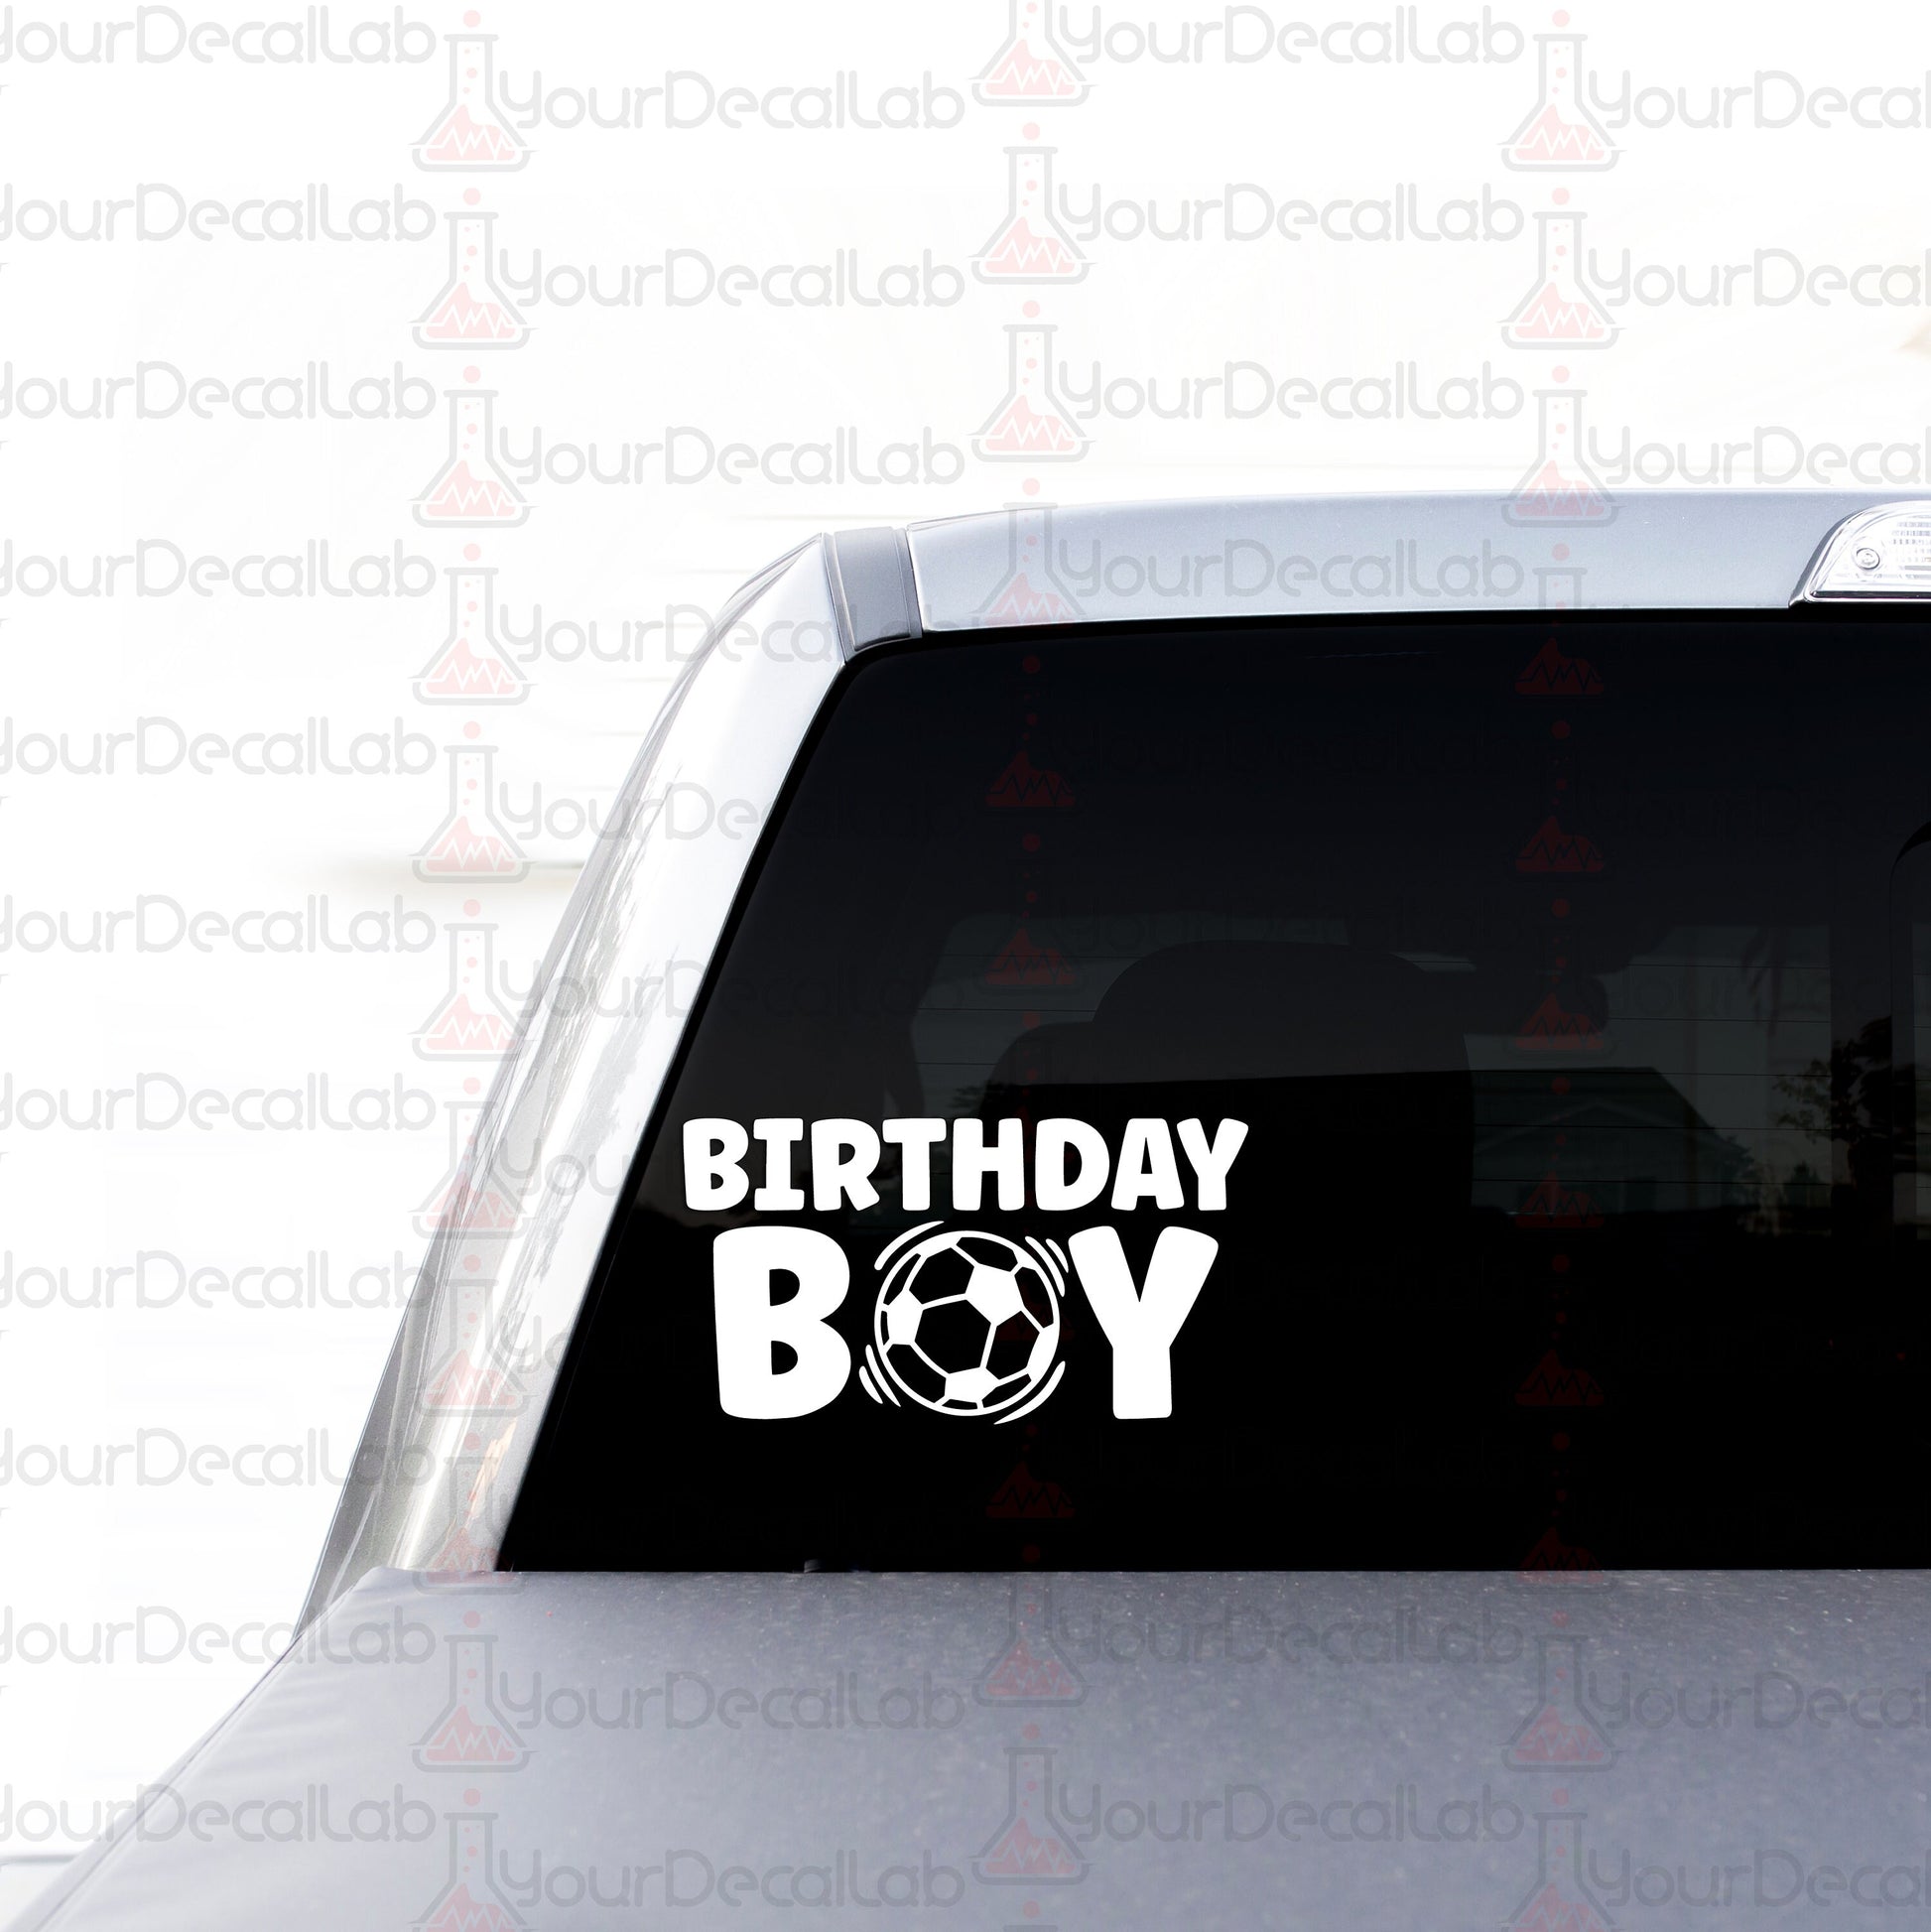 a birthday boy sticker on the back of a car